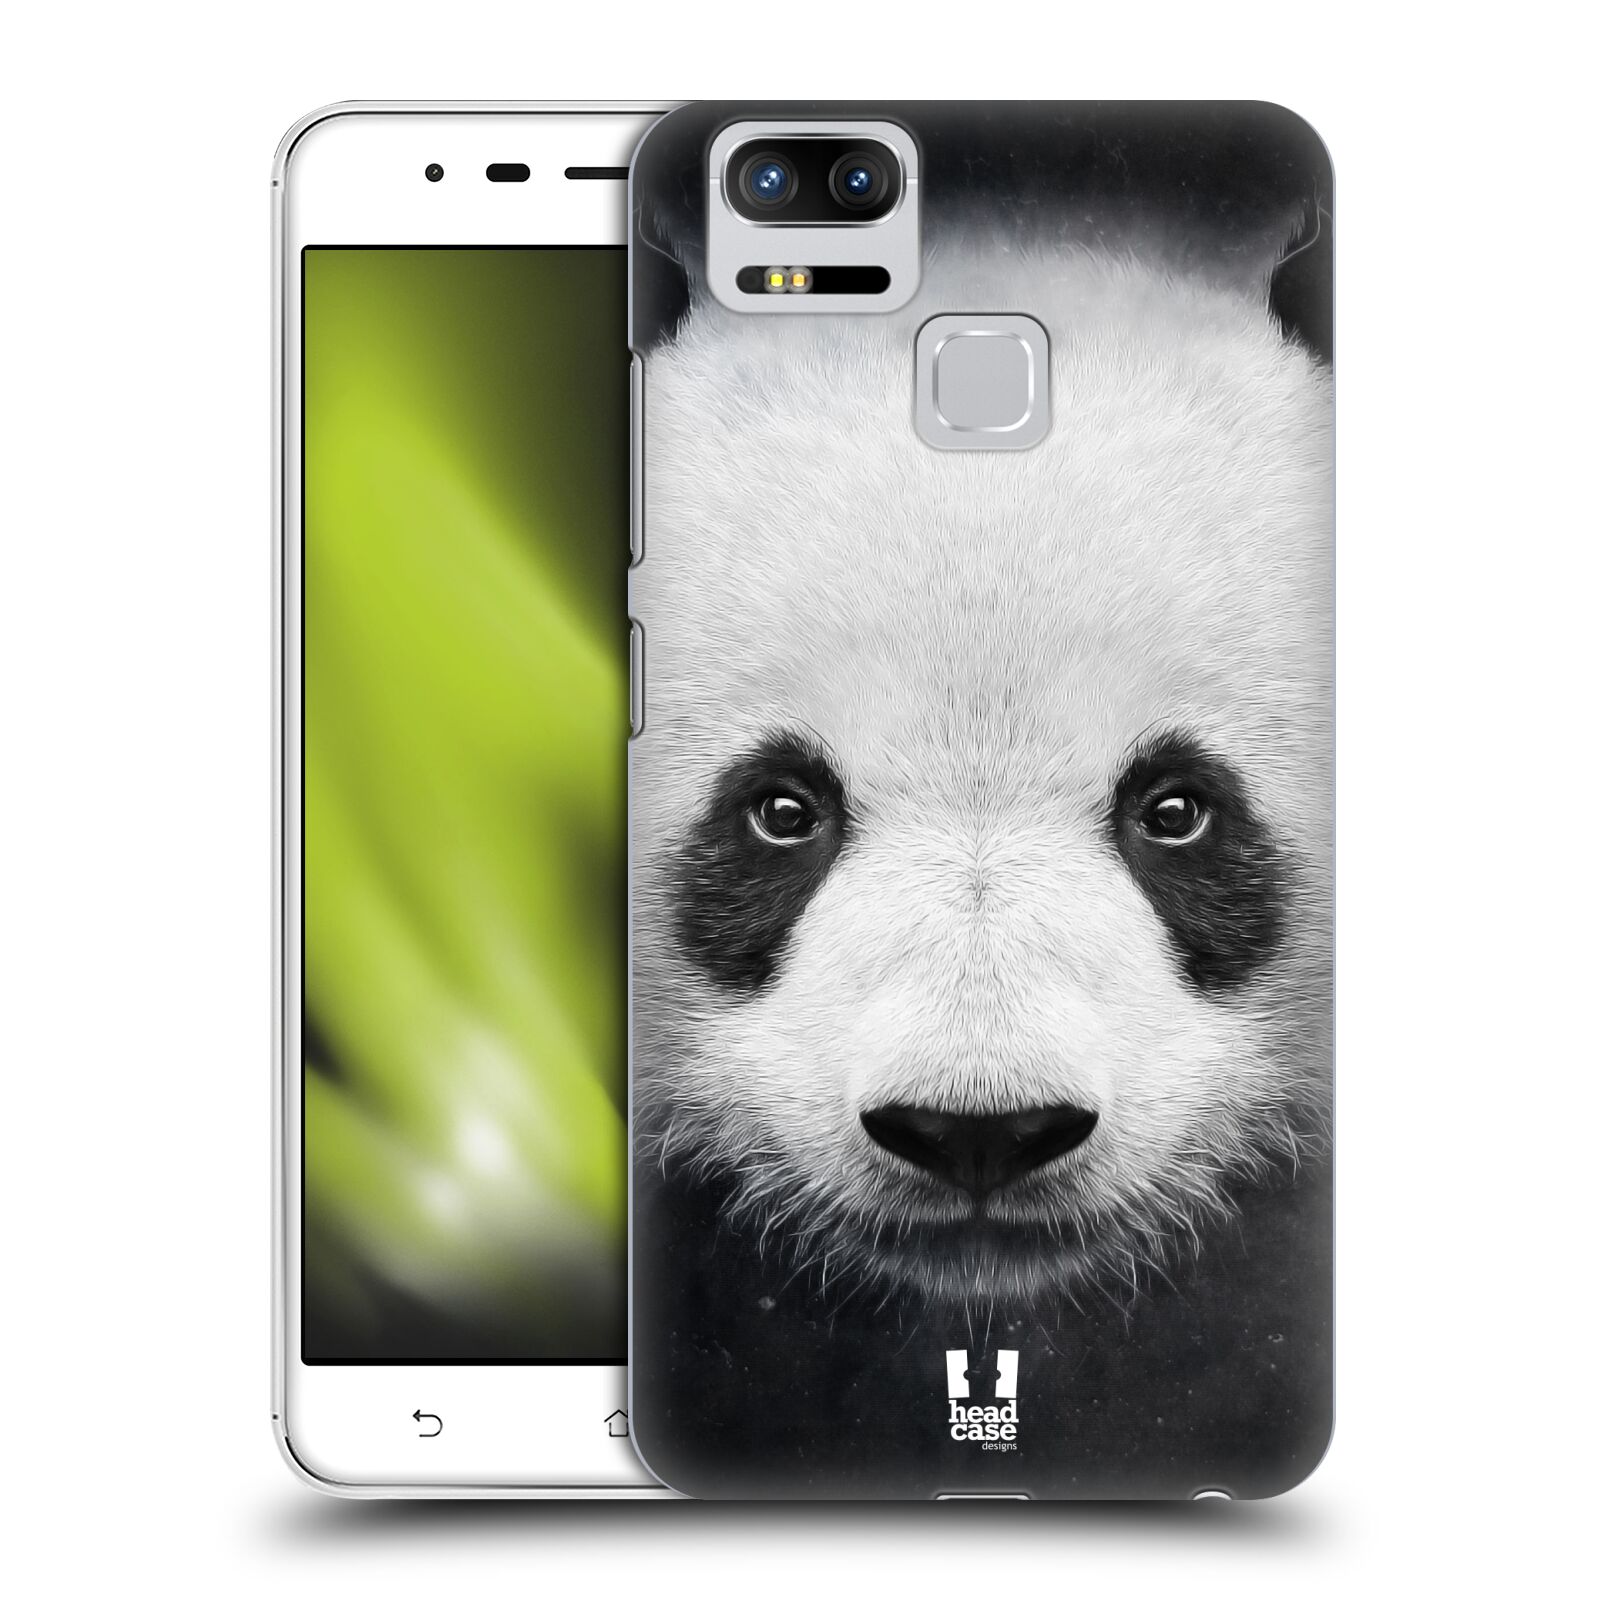 HEAD CASE plastový obal na mobil Asus Zenfone 3 Zoom ZE553KL vzor Zvířecí tváře medvěd panda